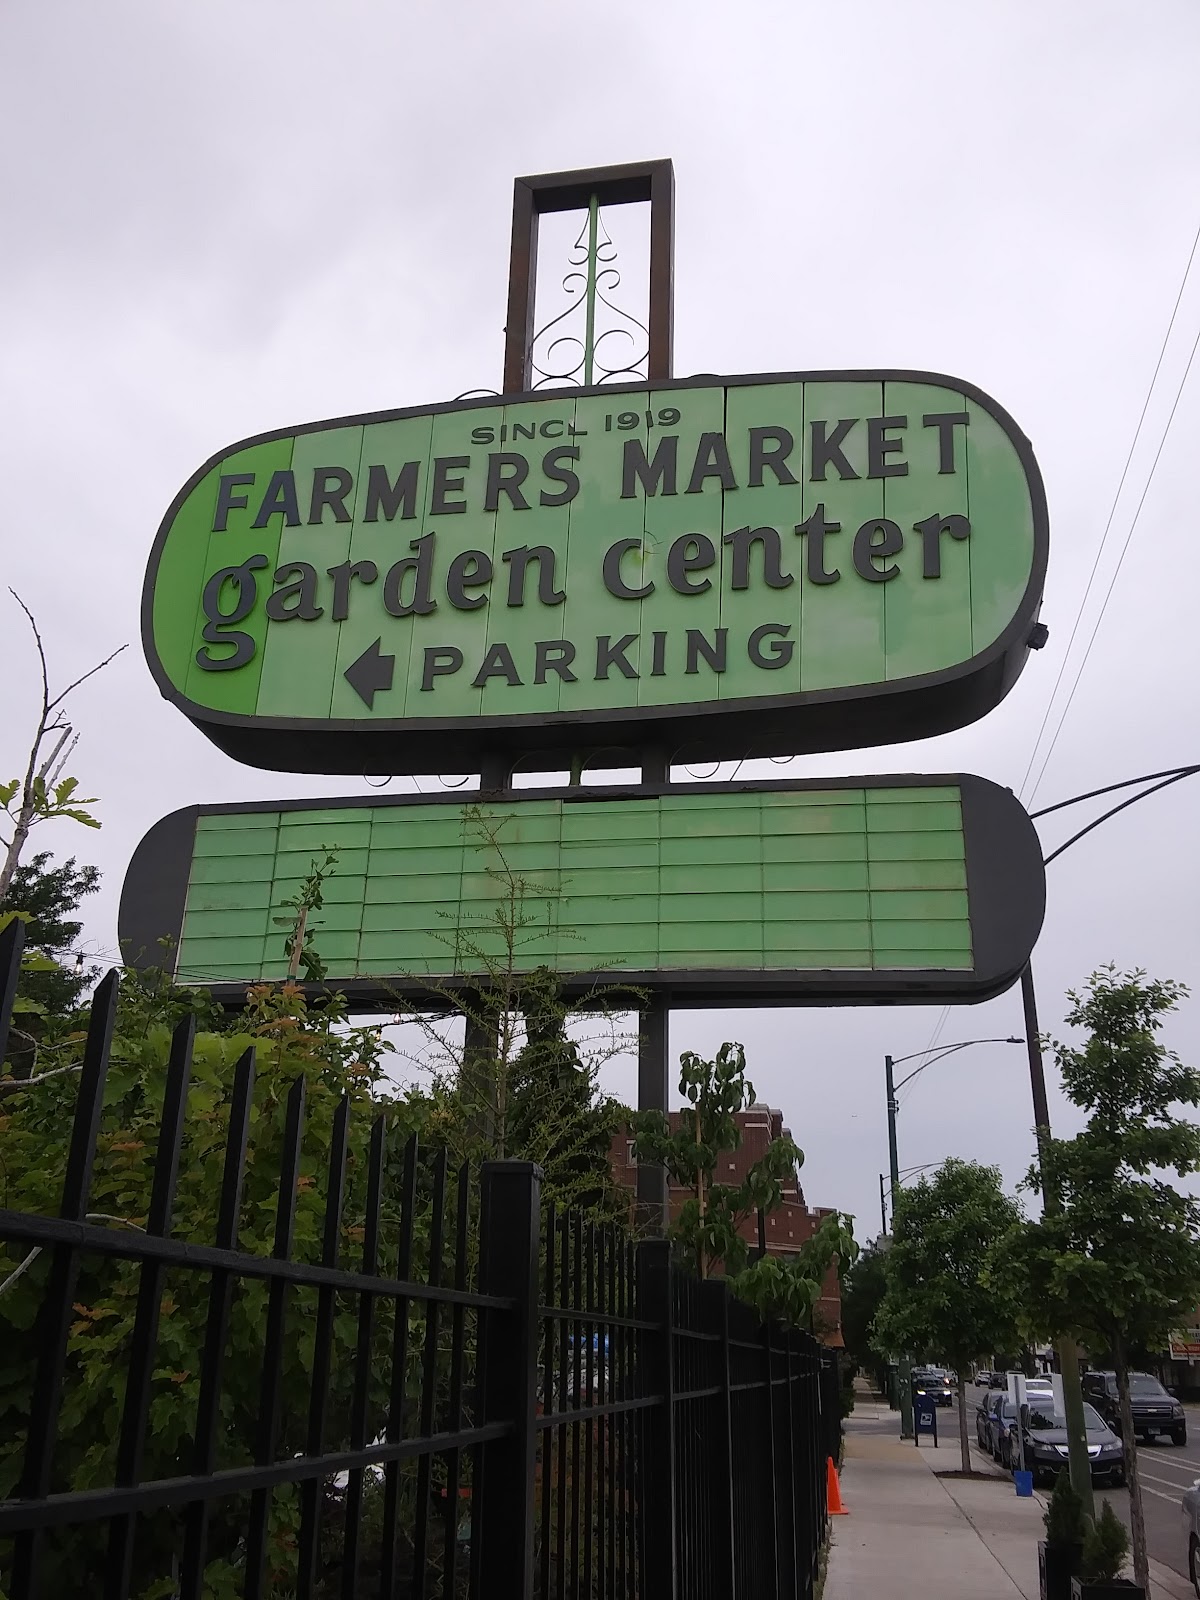 Farmers Market - Chicago's Garden Center reviews